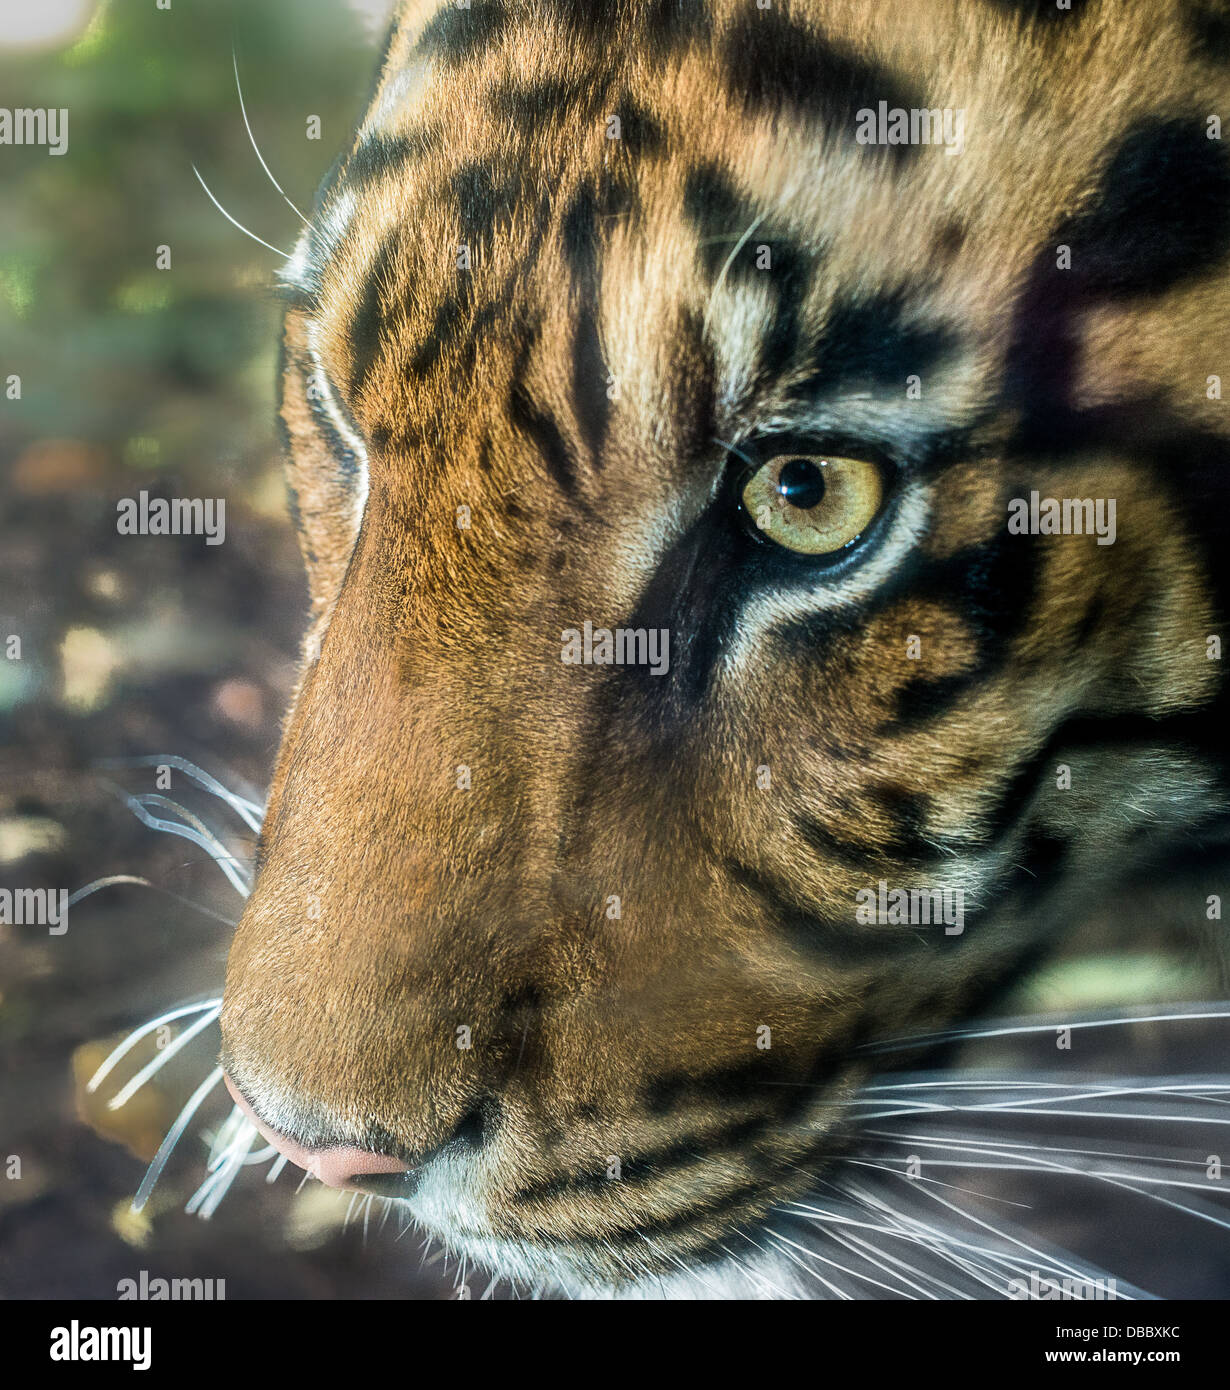 Un close-up head shot of a tiger les yeux dans la distance à la recherche de proies. Banque D'Images